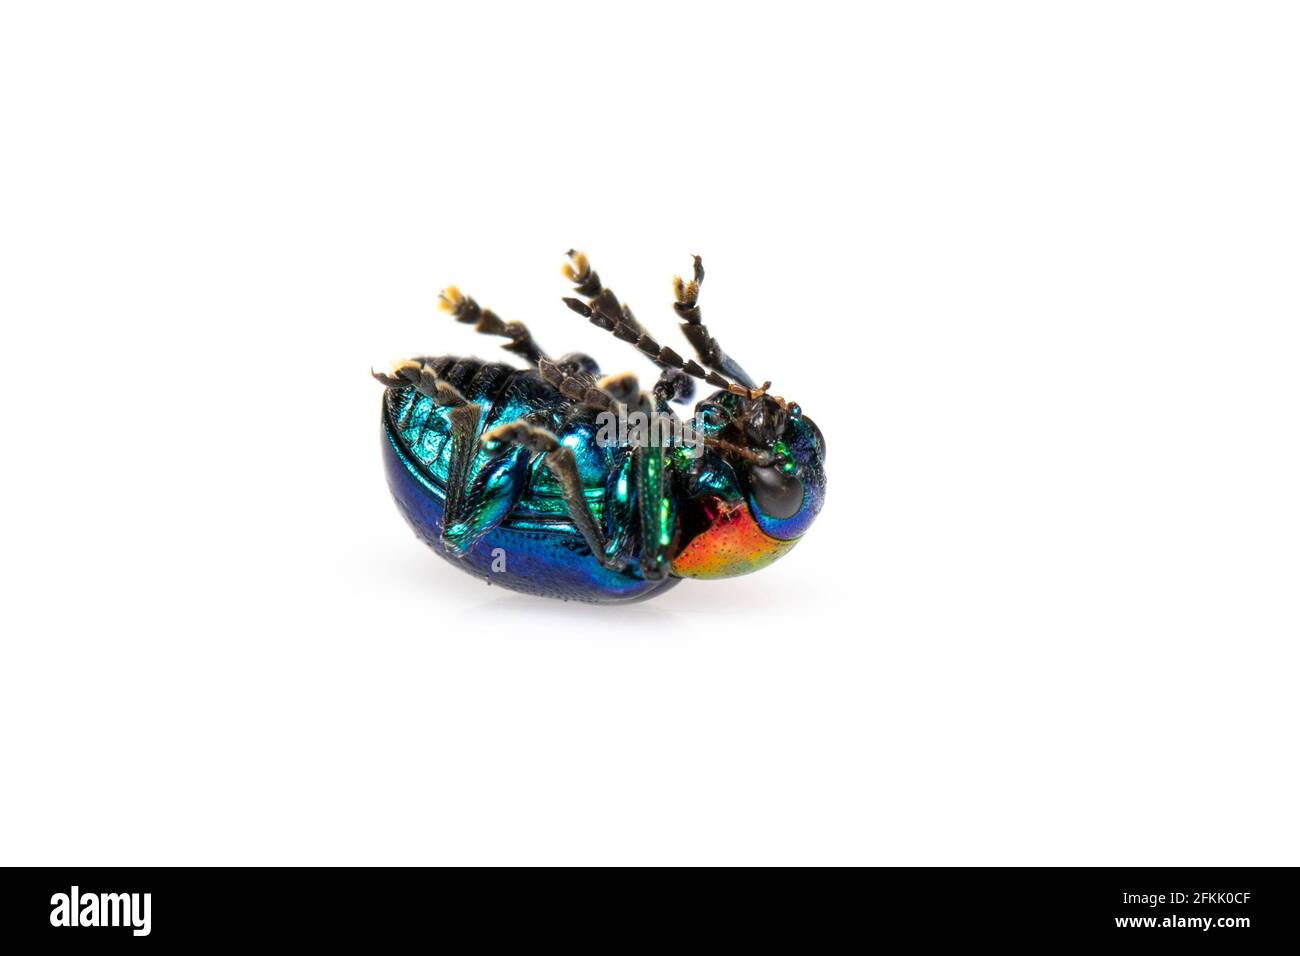 Imagen del escarabajo azul de la maleza tiene alas azules y una cabeza roja aislada sobre fondo blanco. Insecto. Animal. Foto de stock